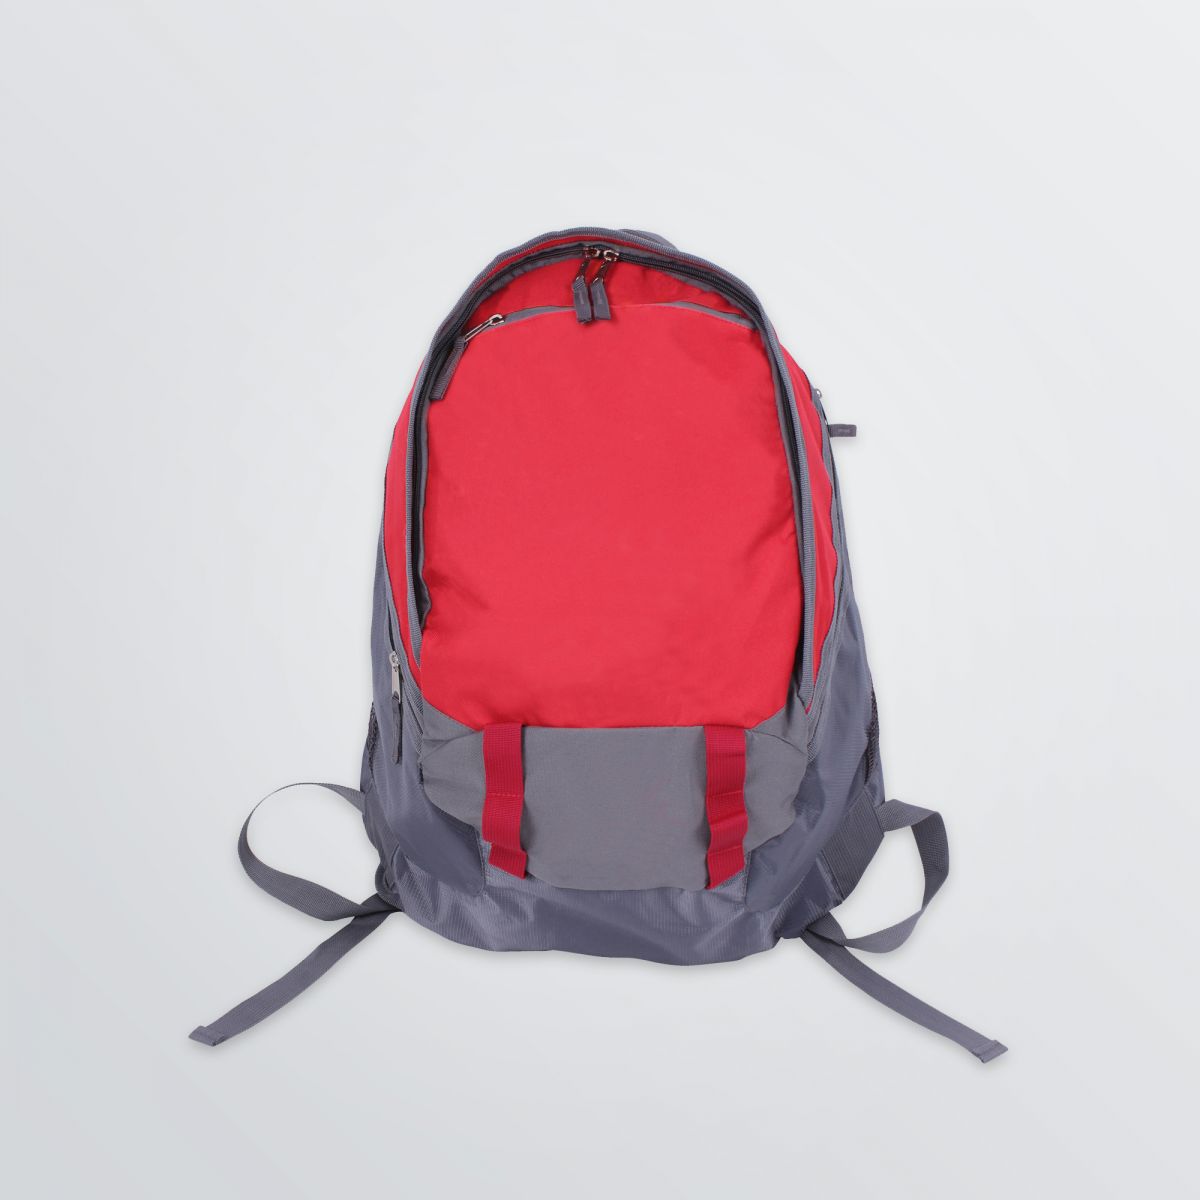 Individualisierbarer großer Rucksack Comfort abgebildet als Farbbeispiel rot grau